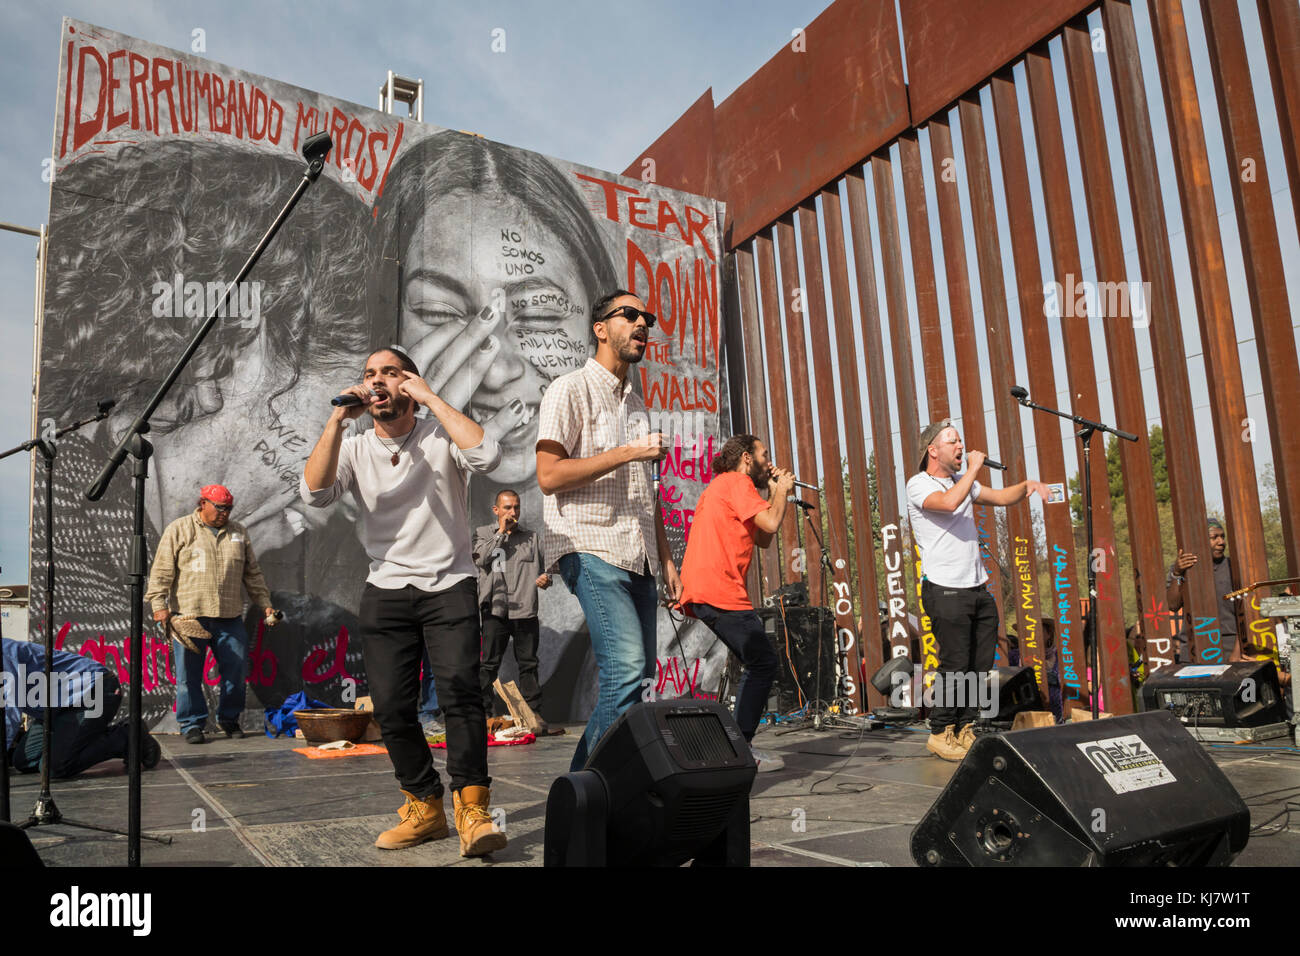 Nogales, Sonora, México - la paz poetas realice durante un mitin en ambos lados de la valla fronteriza México-EE.UU. pidiendo más abierto e inmigración. Foto de stock